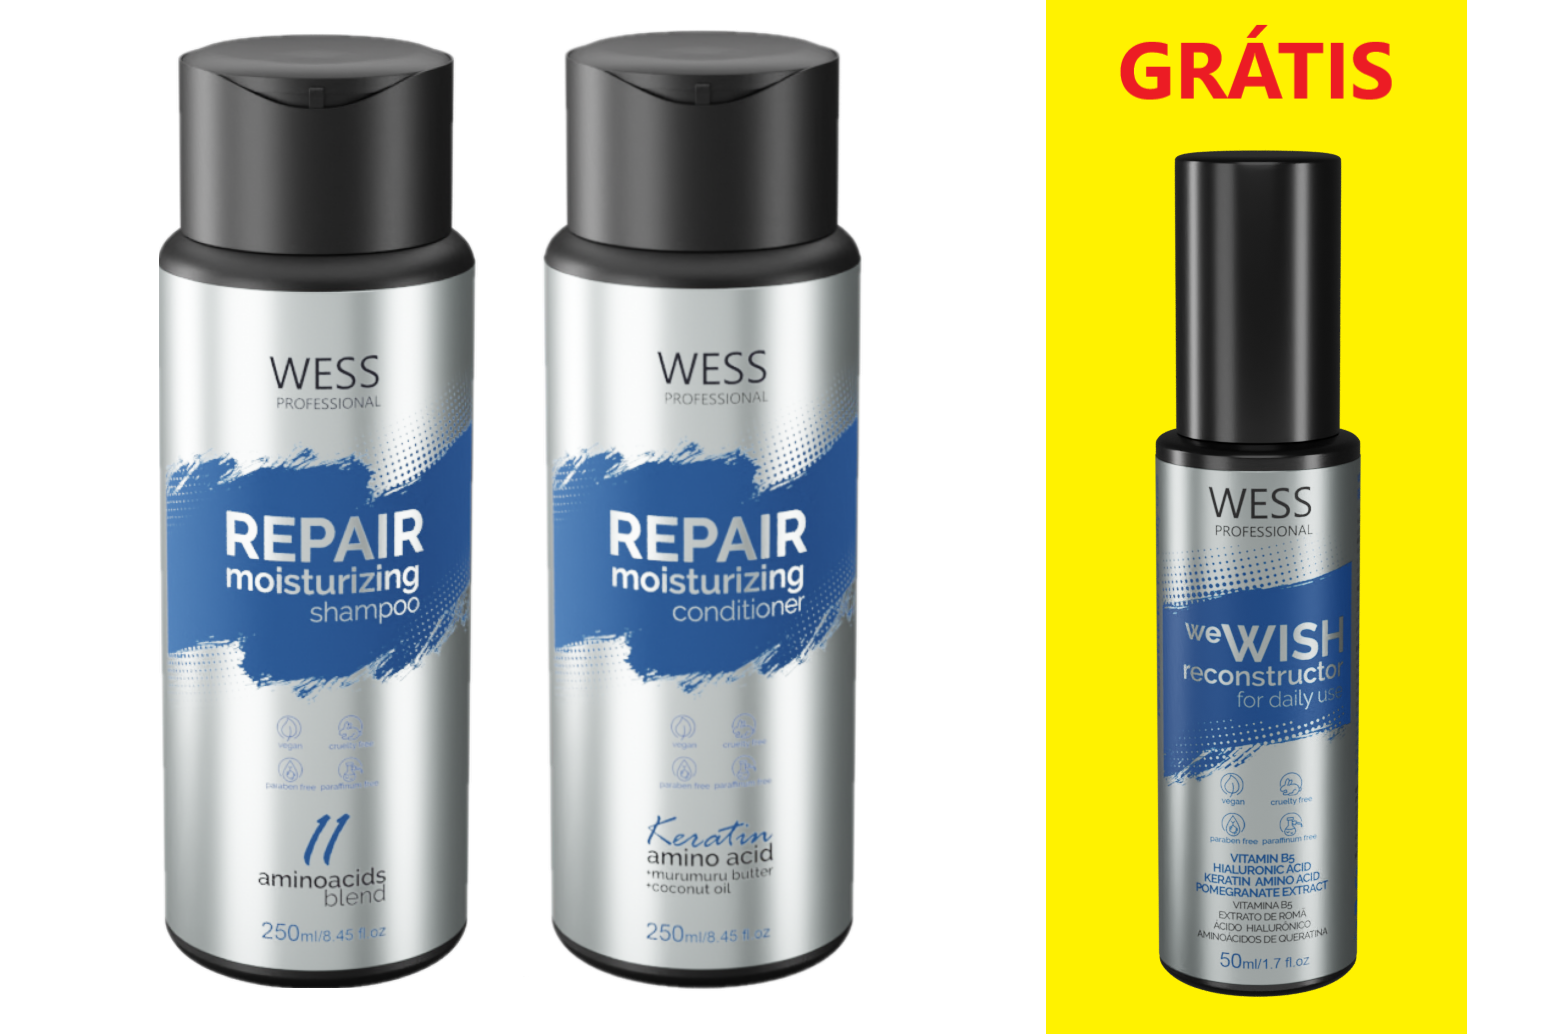 Wess Kit Repair Shampoo e Condicionador + we Wish Reconstrutor ÚNICO 2